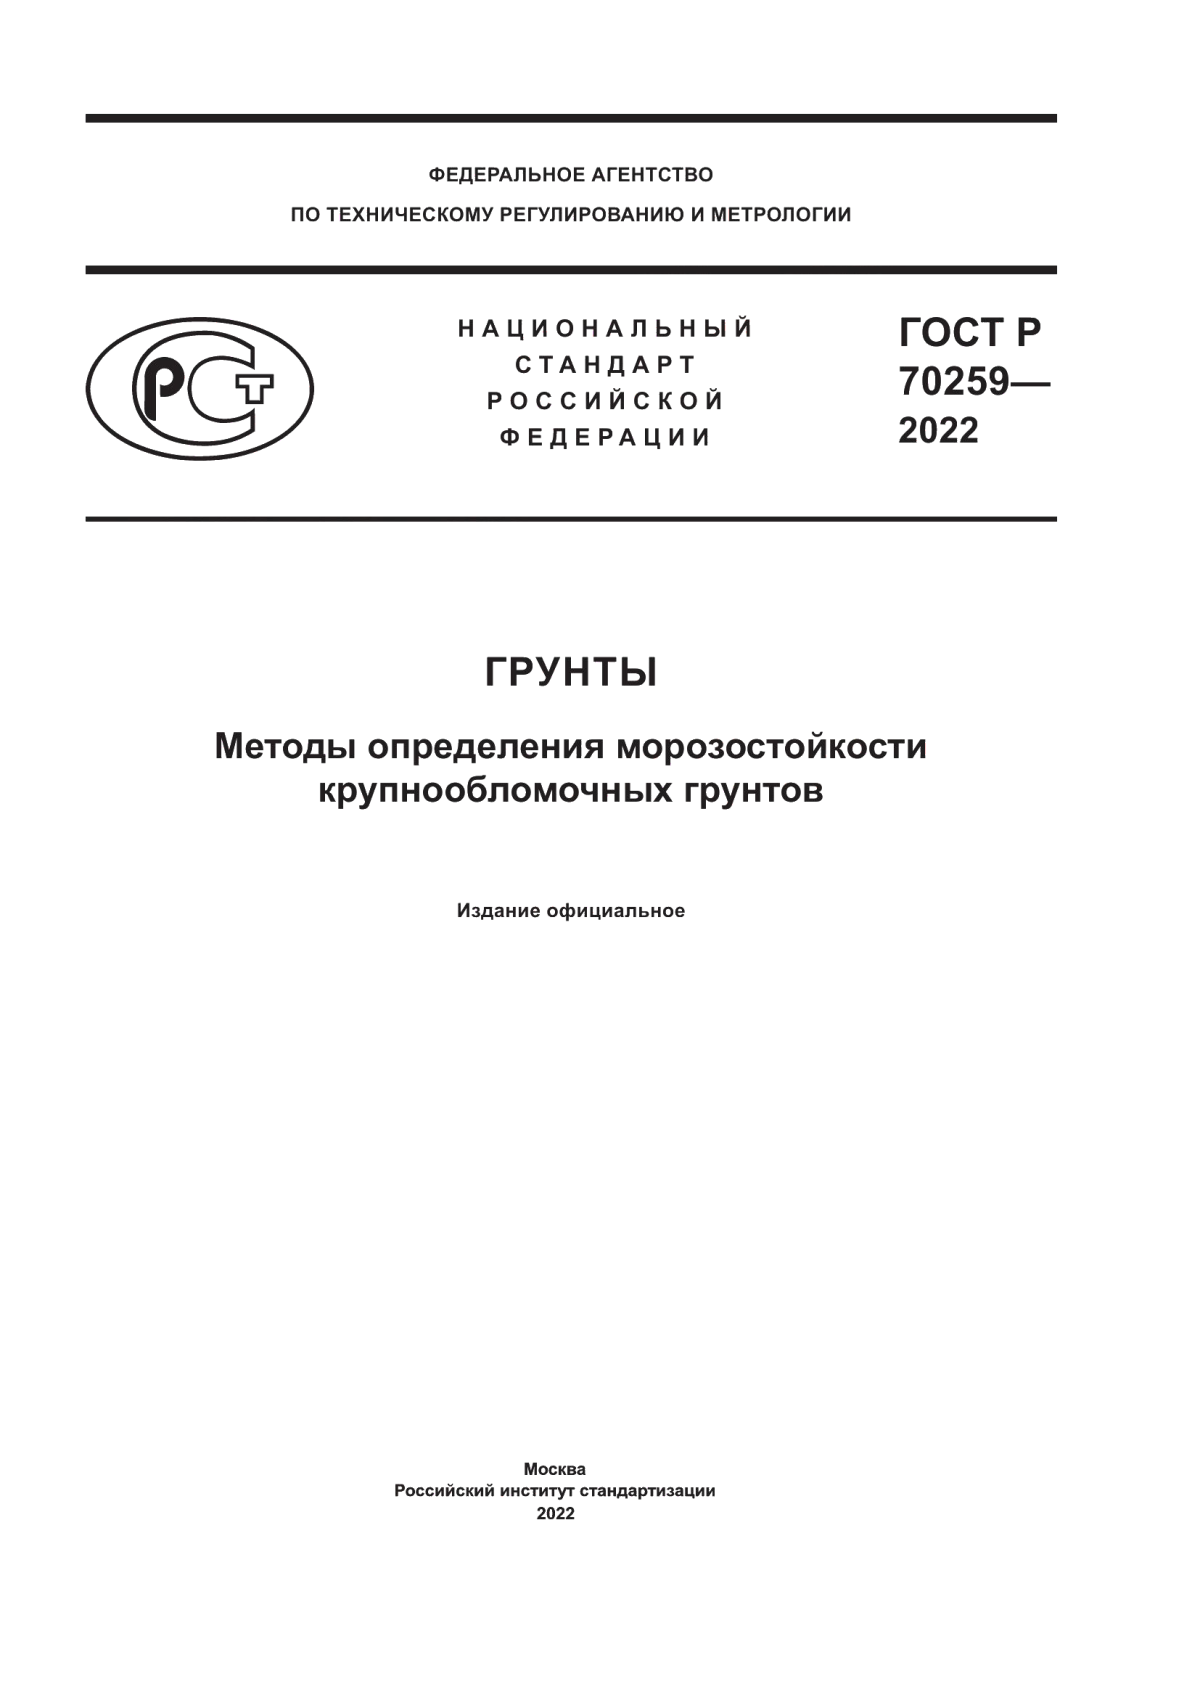 ГОСТ Р 70259-2022 Грунты. Методы определения морозостойкости крупнообломочных грунтов